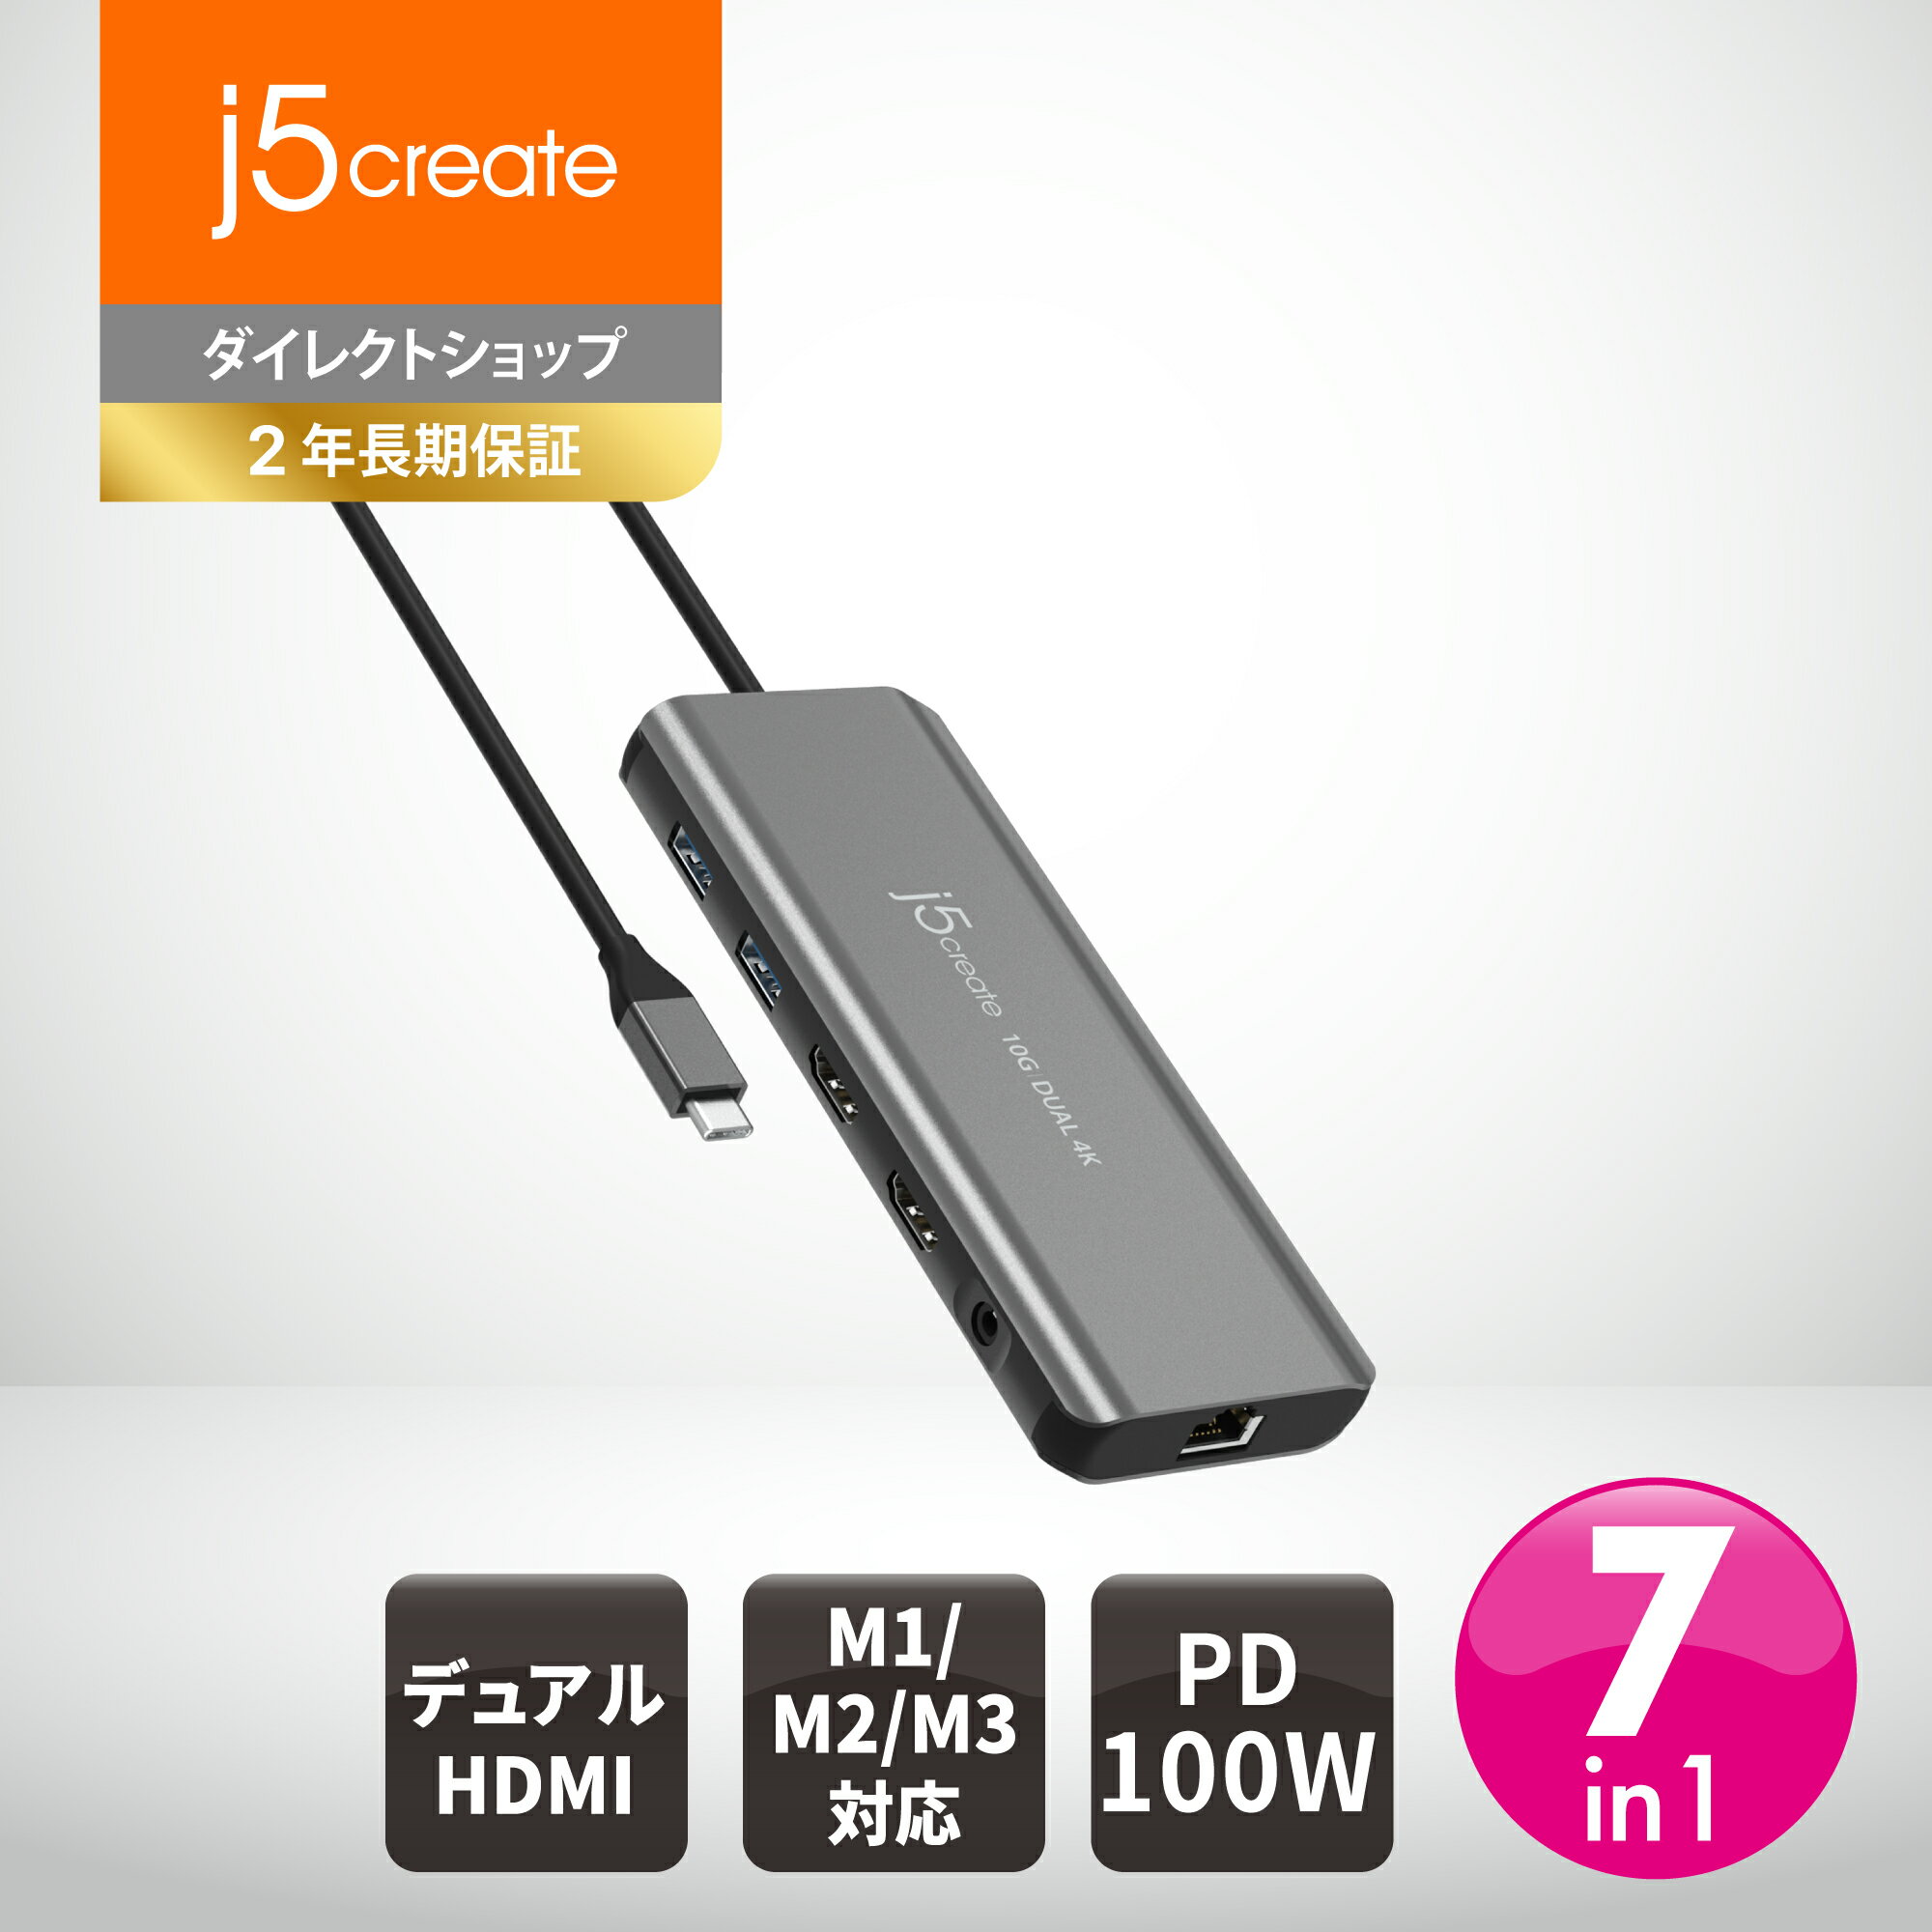 j5create USB-C デュアルディスプレイ ドッキングステーションMac M1 M2 M3対応 Windows対応 JCD398-EJ